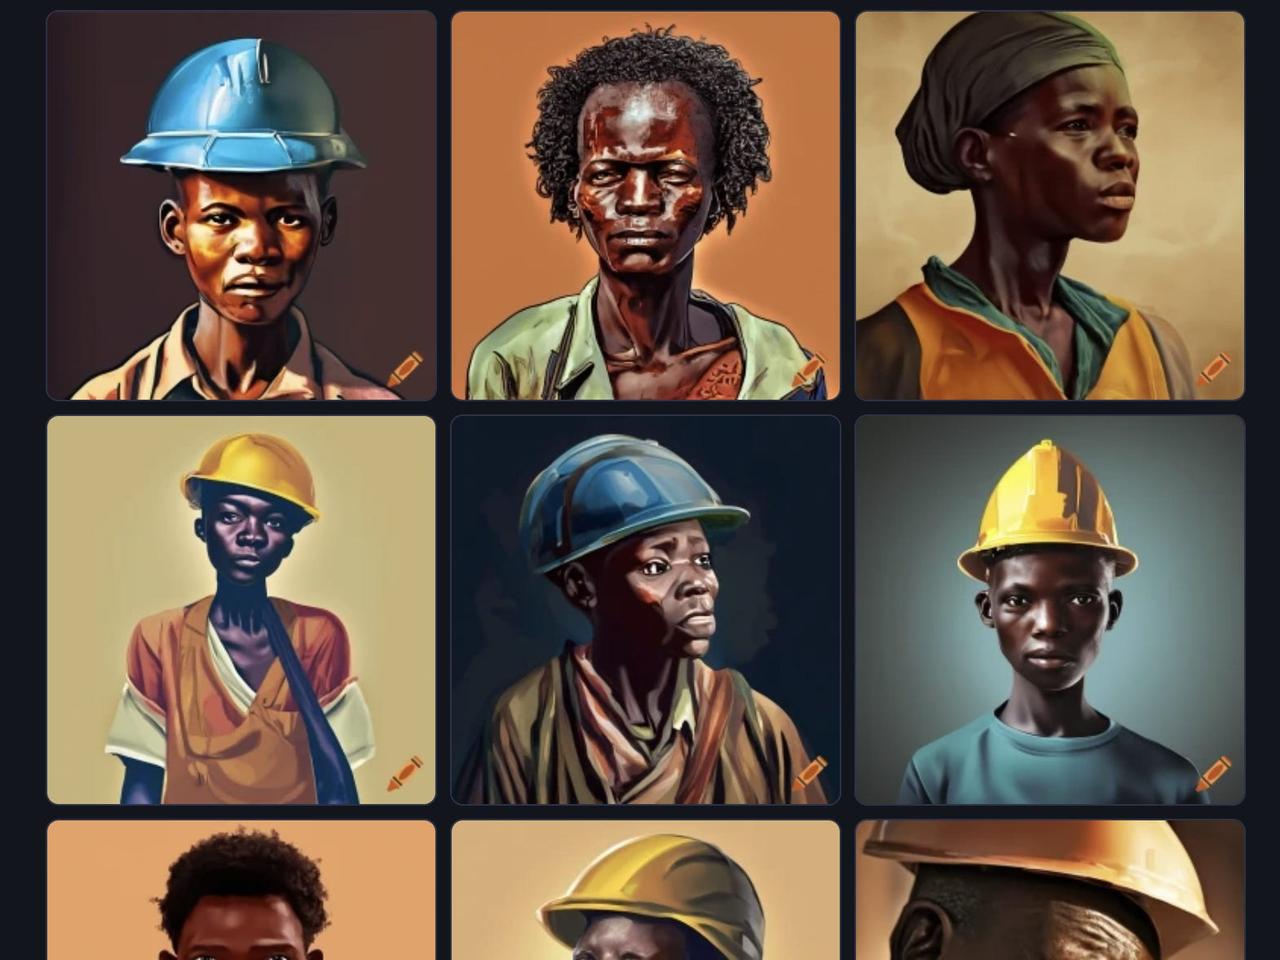 ｢DALL-E｣をもとにした無料ツール｢Craiyon｣に出力させた、｢アフリカ人労働者｣のAI生成画像。